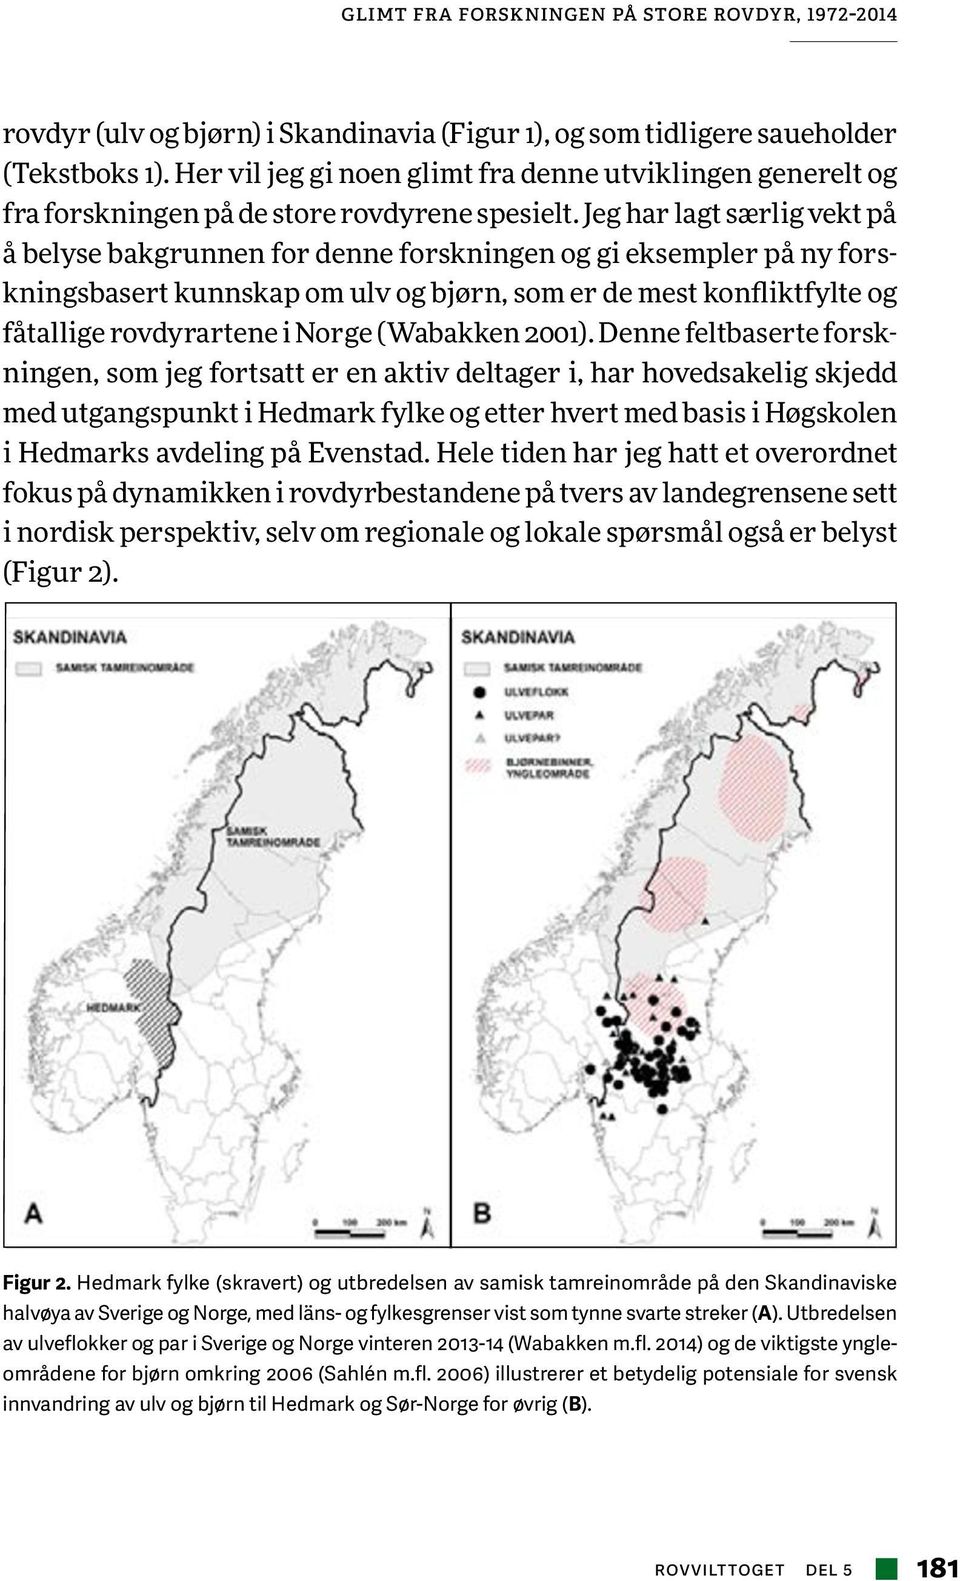 Jeg har lagt særlig vekt på å belyse bakgrunnen for denne forskningen og gi eksempler på ny forskningsbasert kunnskap om ulv og bjørn, som er de mest konfliktfylte og fåtallige rovdyrartene i Norge